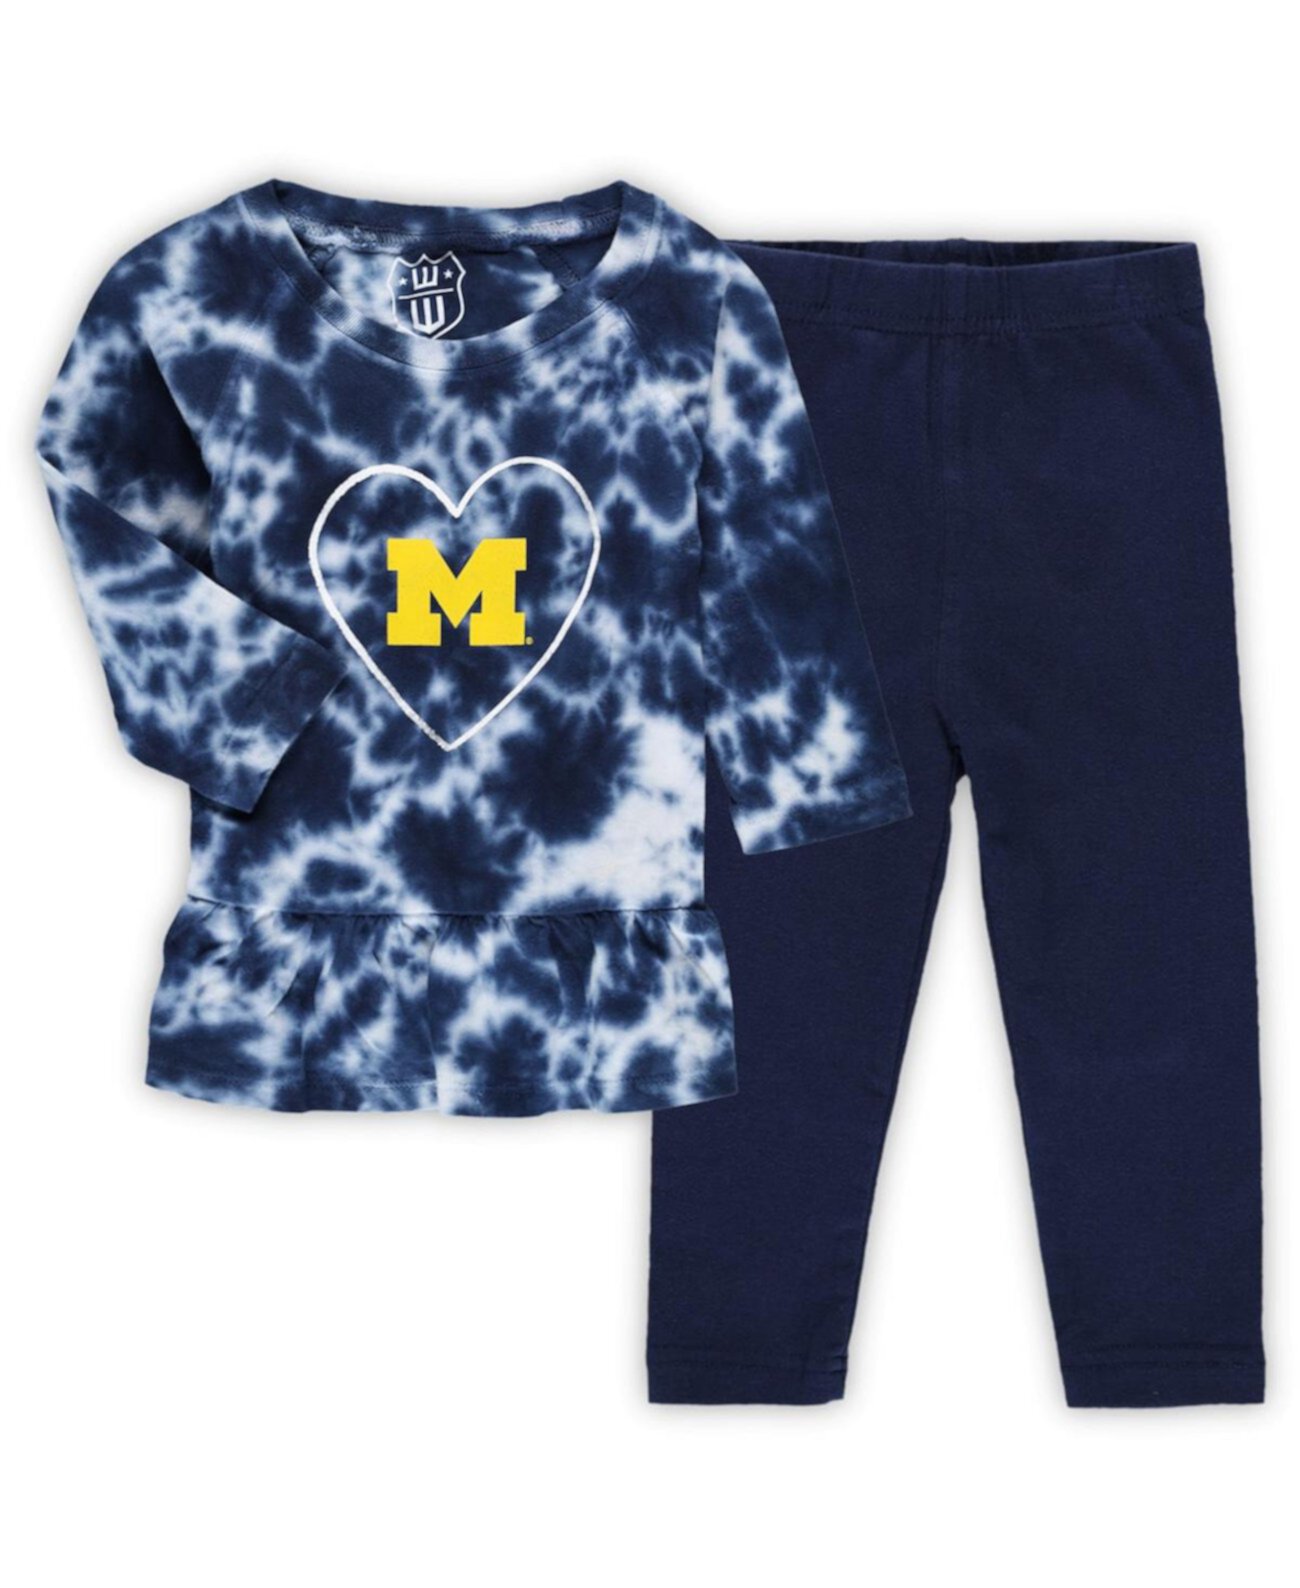 Комплект из футболки и леггинсов с длинными рукавами и леггинсов темно-синего цвета для девочек «Мичиган Росомаха» с оборками и принтом «тай-дай» Wes & Willy